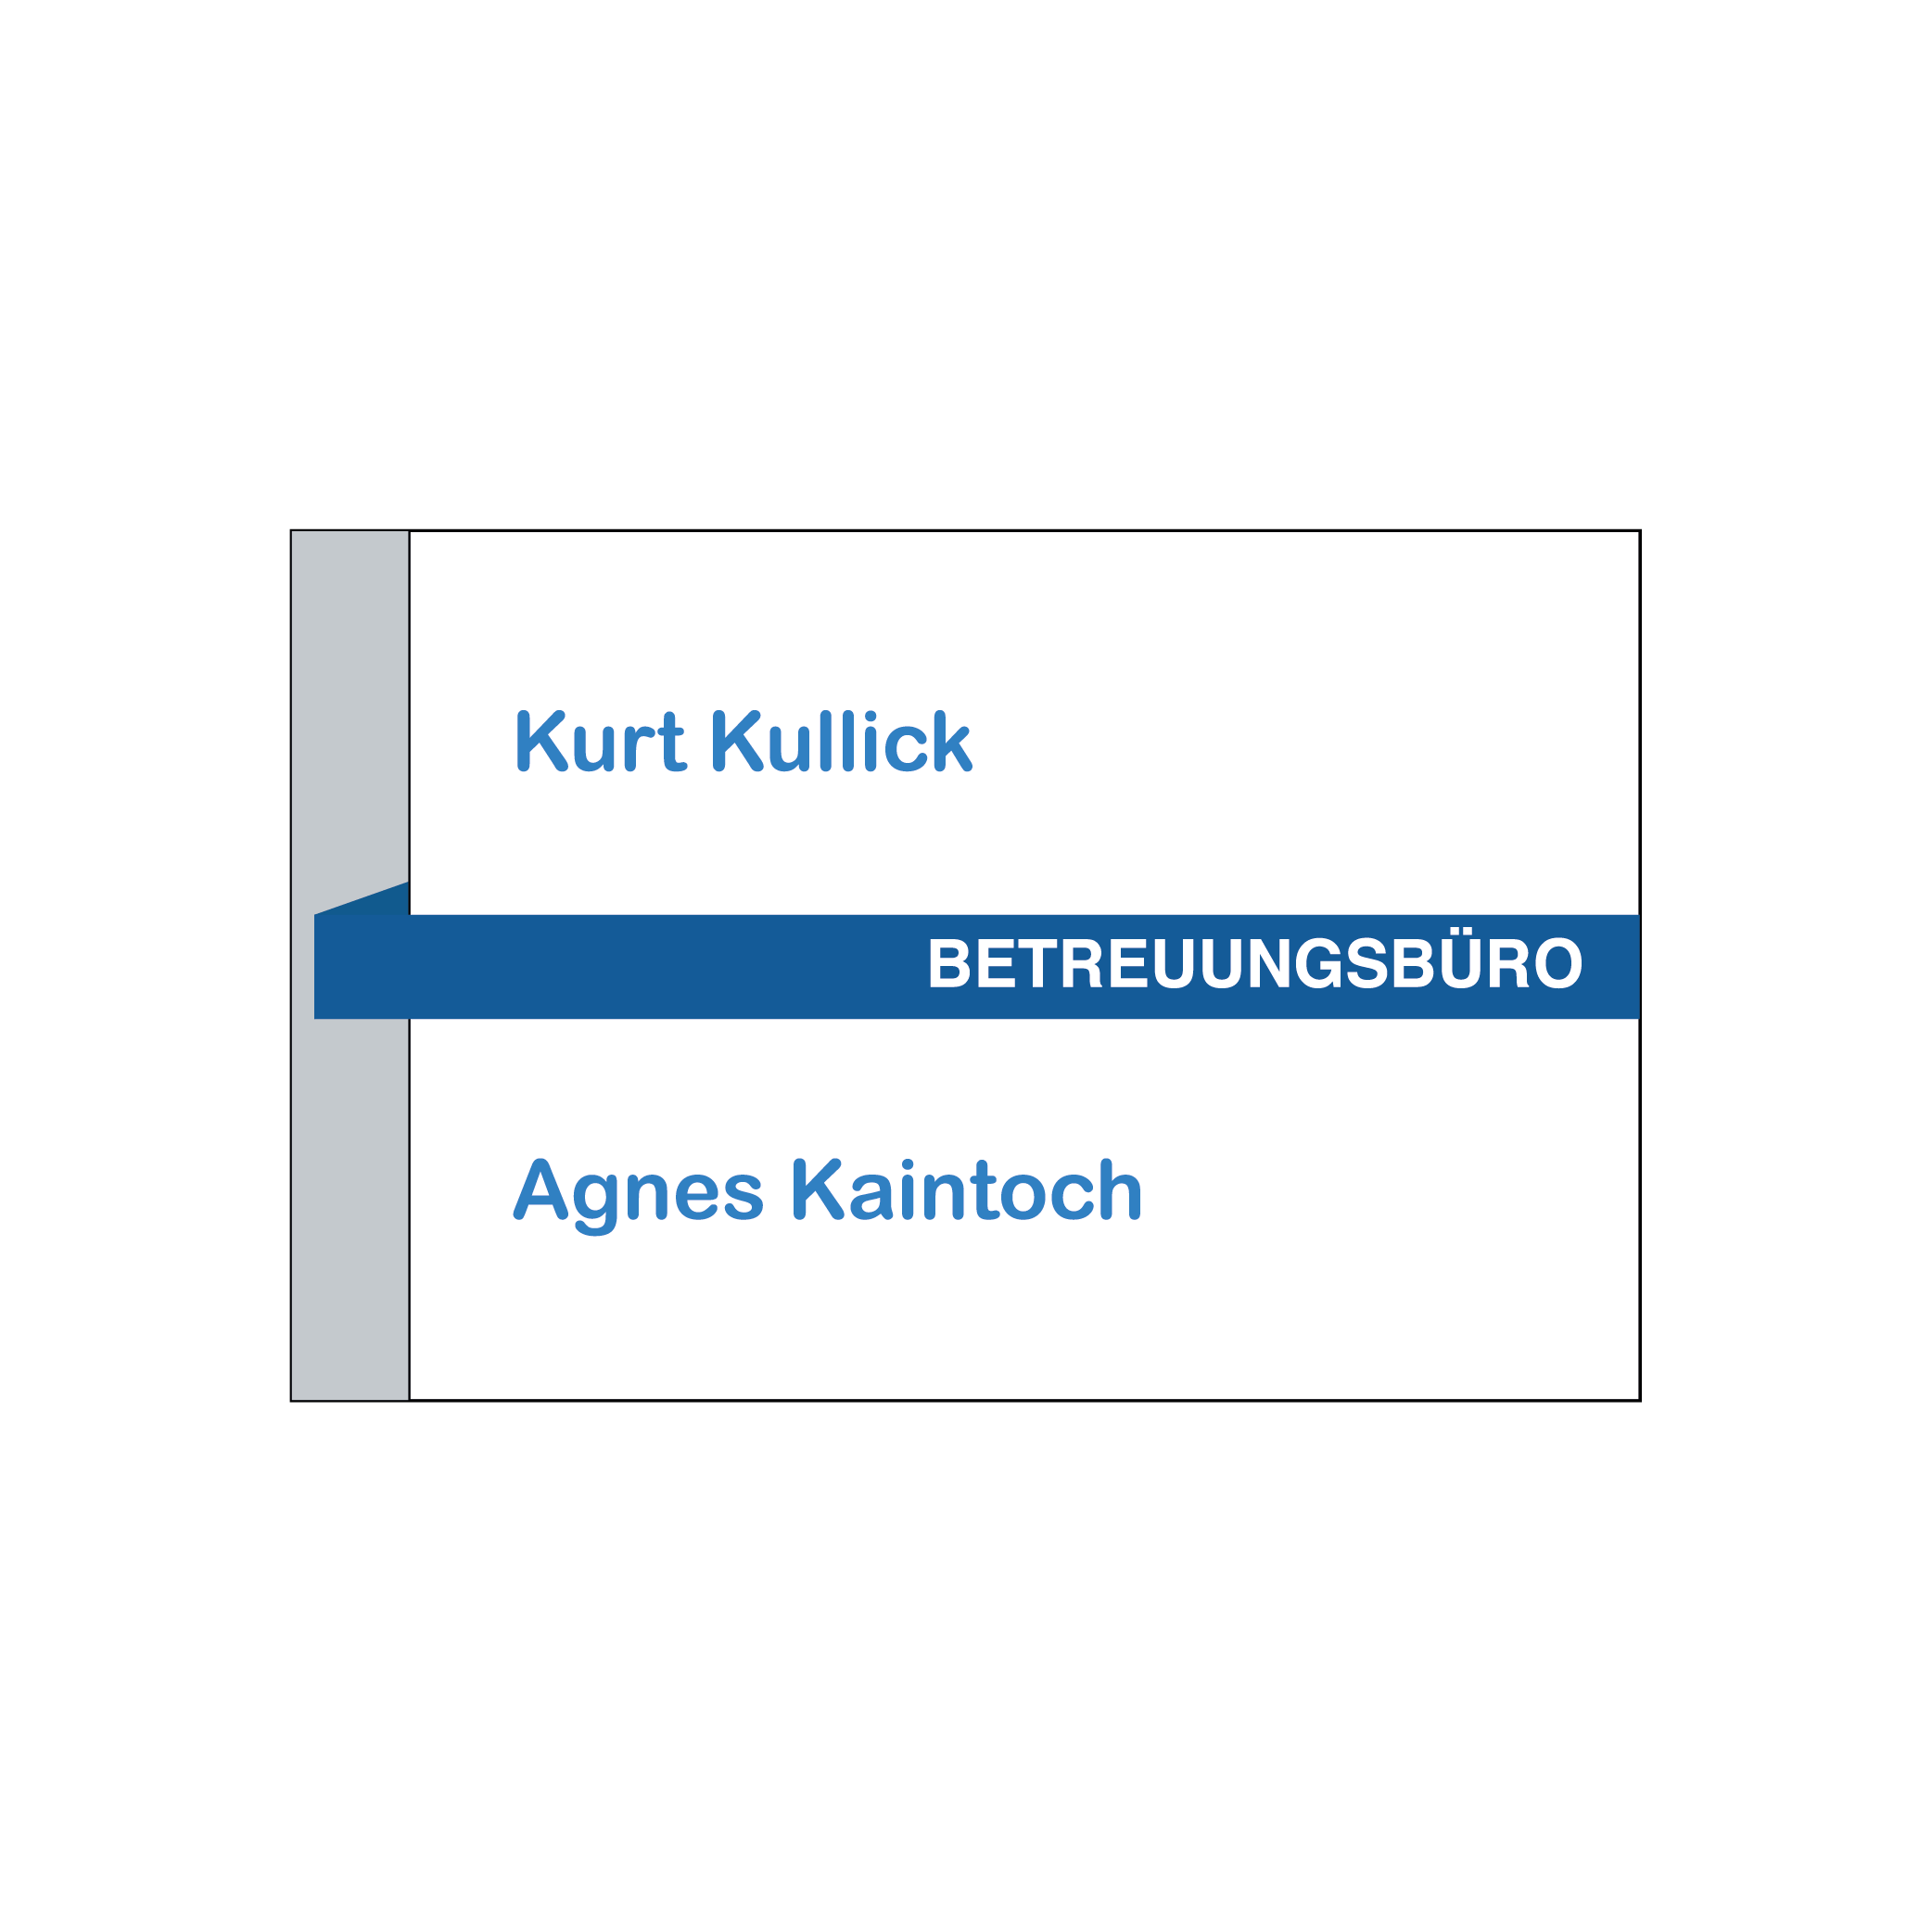 Kurt Kullick